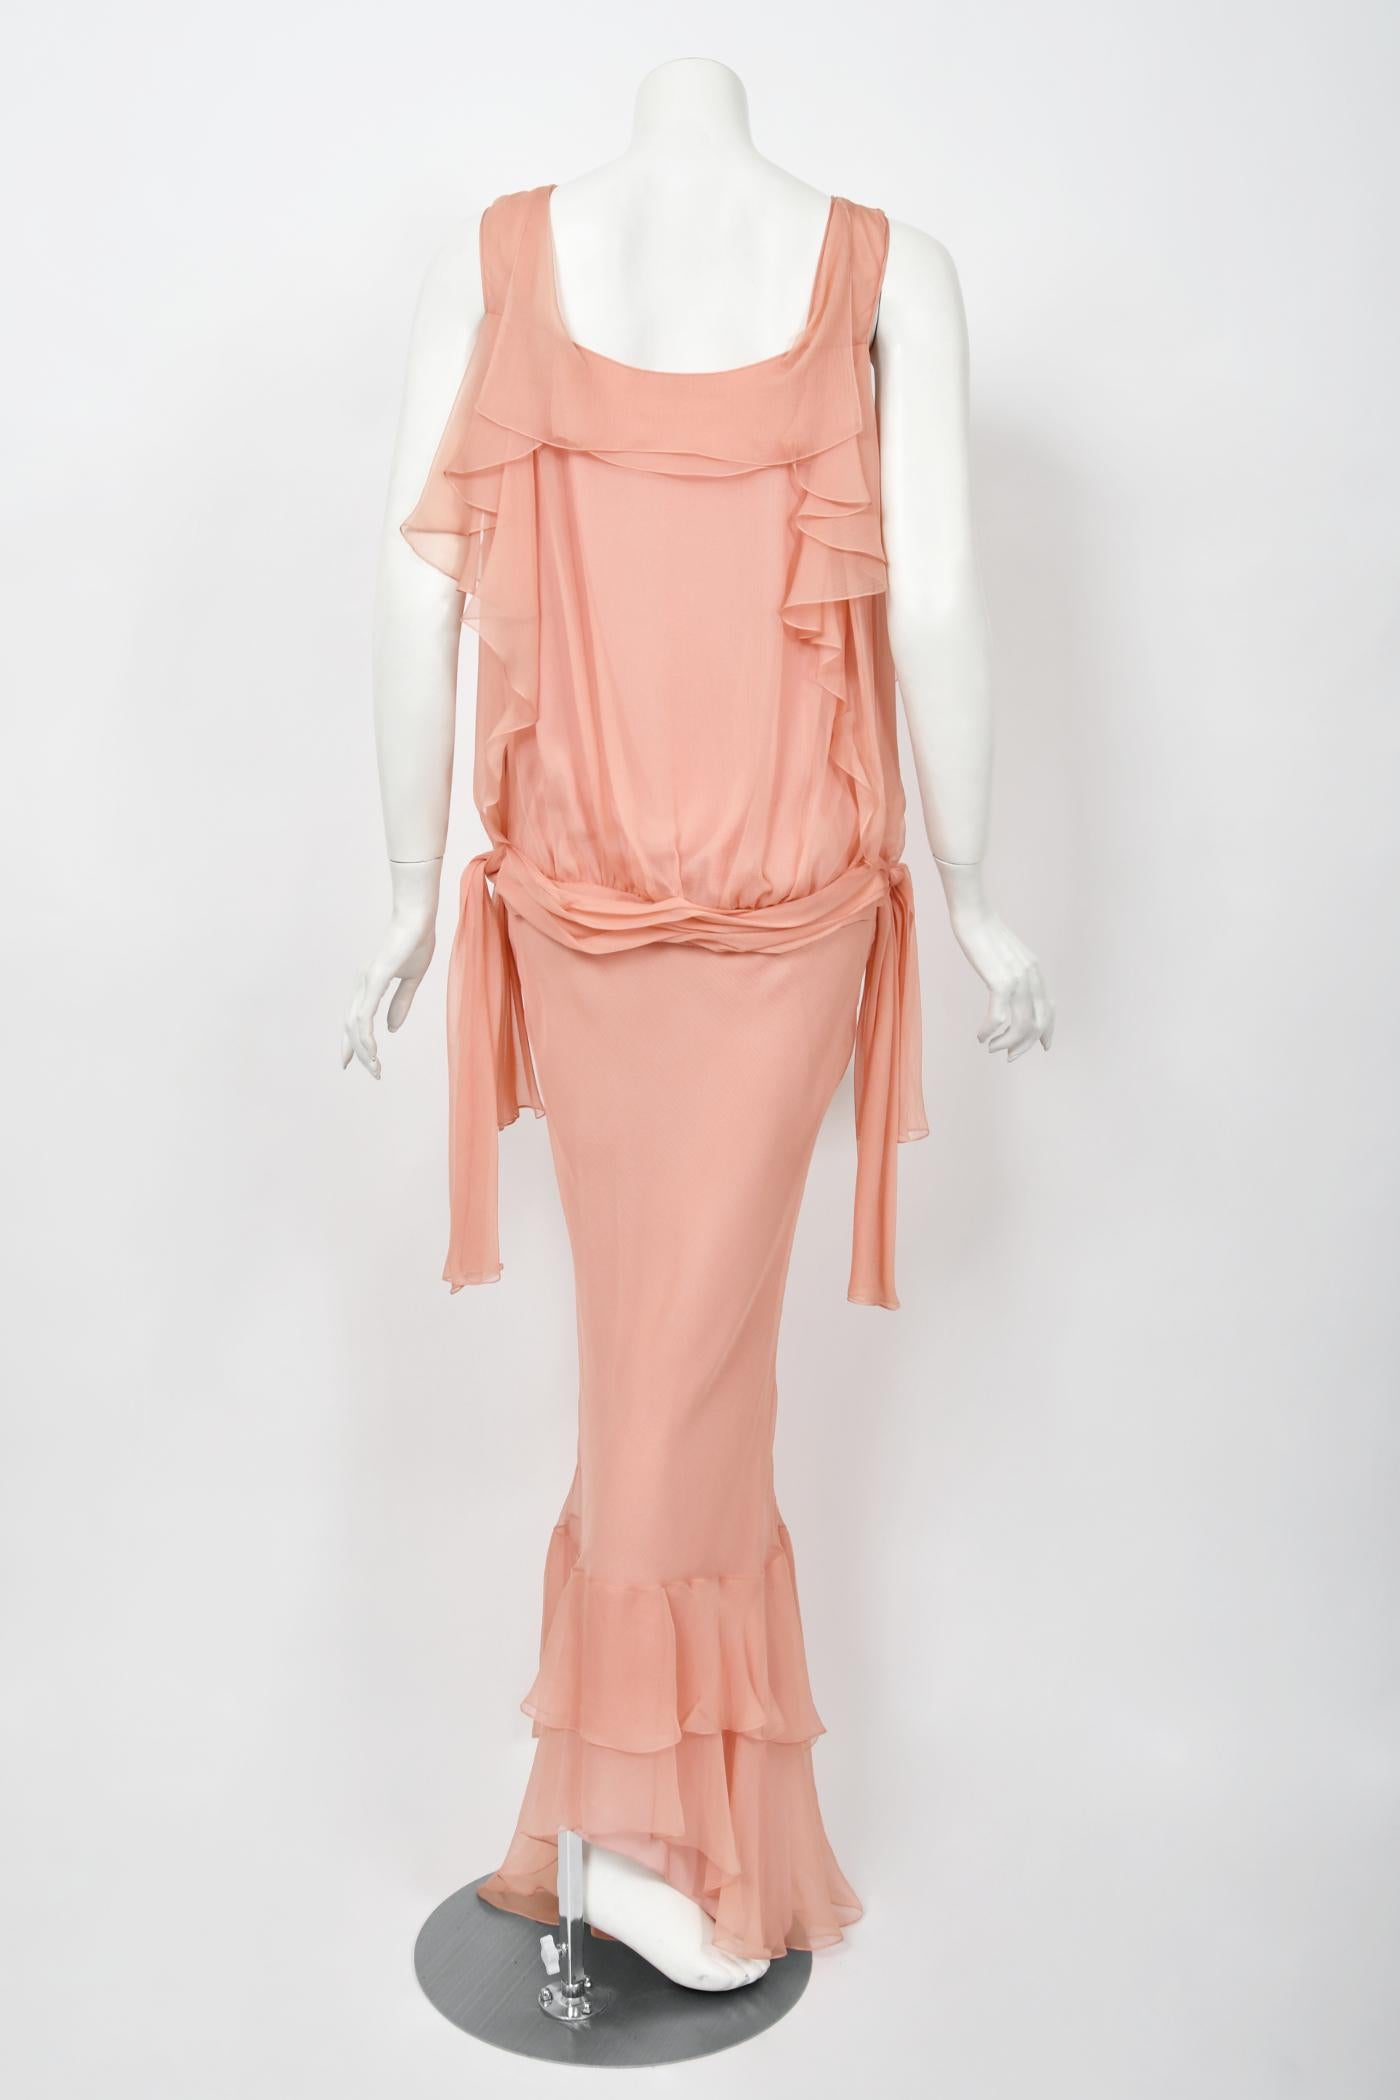 2008 John Galliano Pale Pink Semi-Sheer Silk Chiffon Draped Ruffle Bias-Cut Gown 12